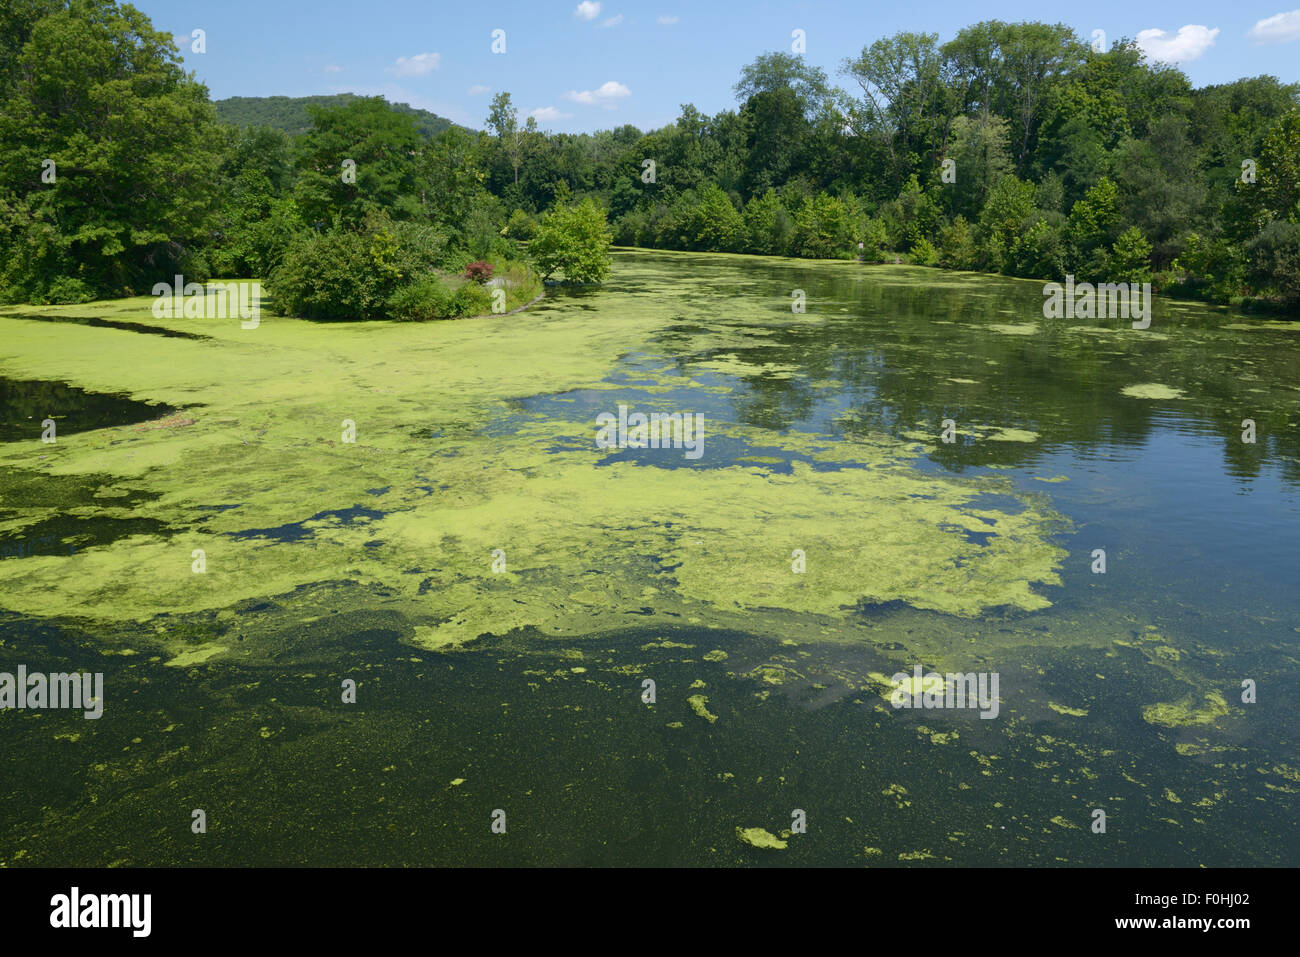 Algenblüte infolge der Eutrophierung, Ramapo River, northern NJ. Verunreinigung des Wassers Stockfoto